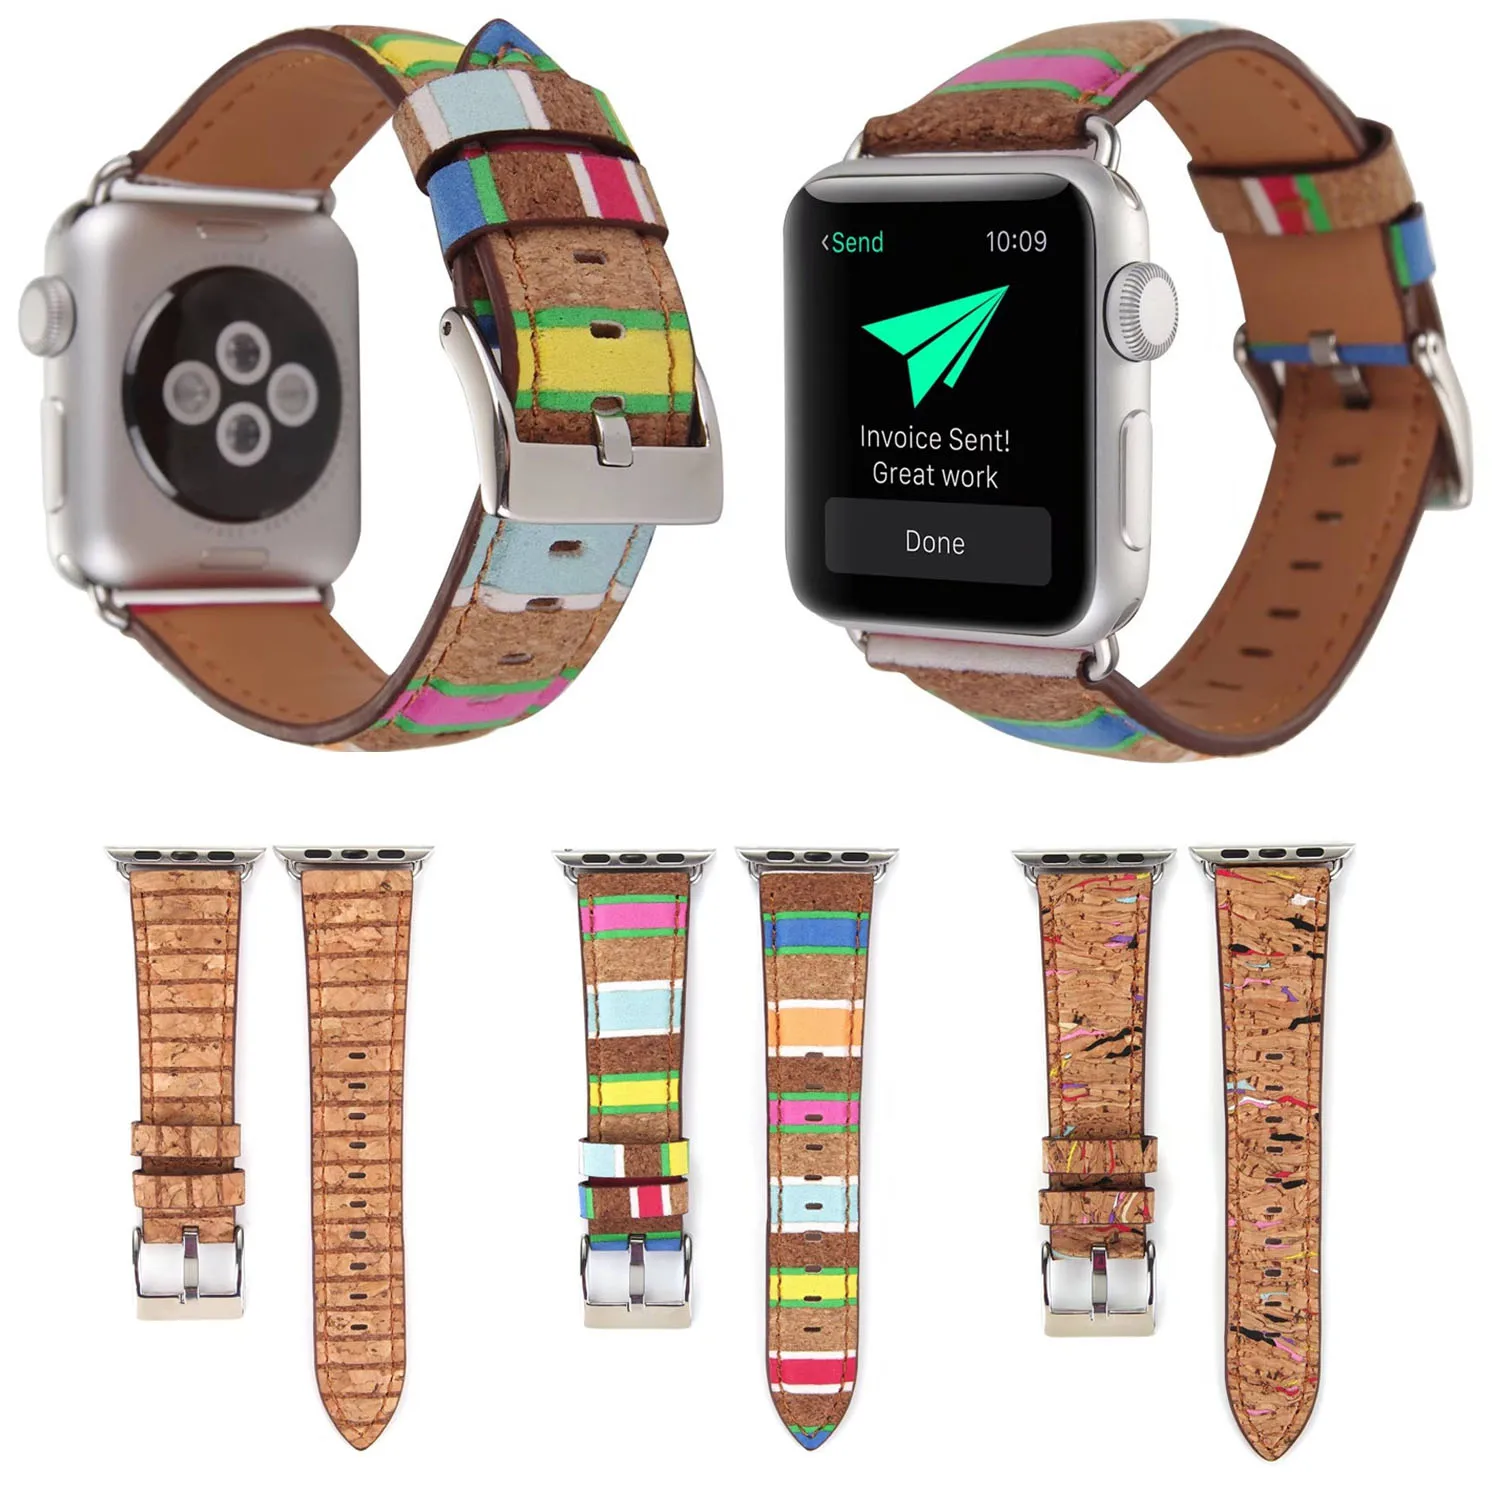 Природный рисунок древесины печати кожаный ремешок для Apple Watch Series 3 2 1 ремень